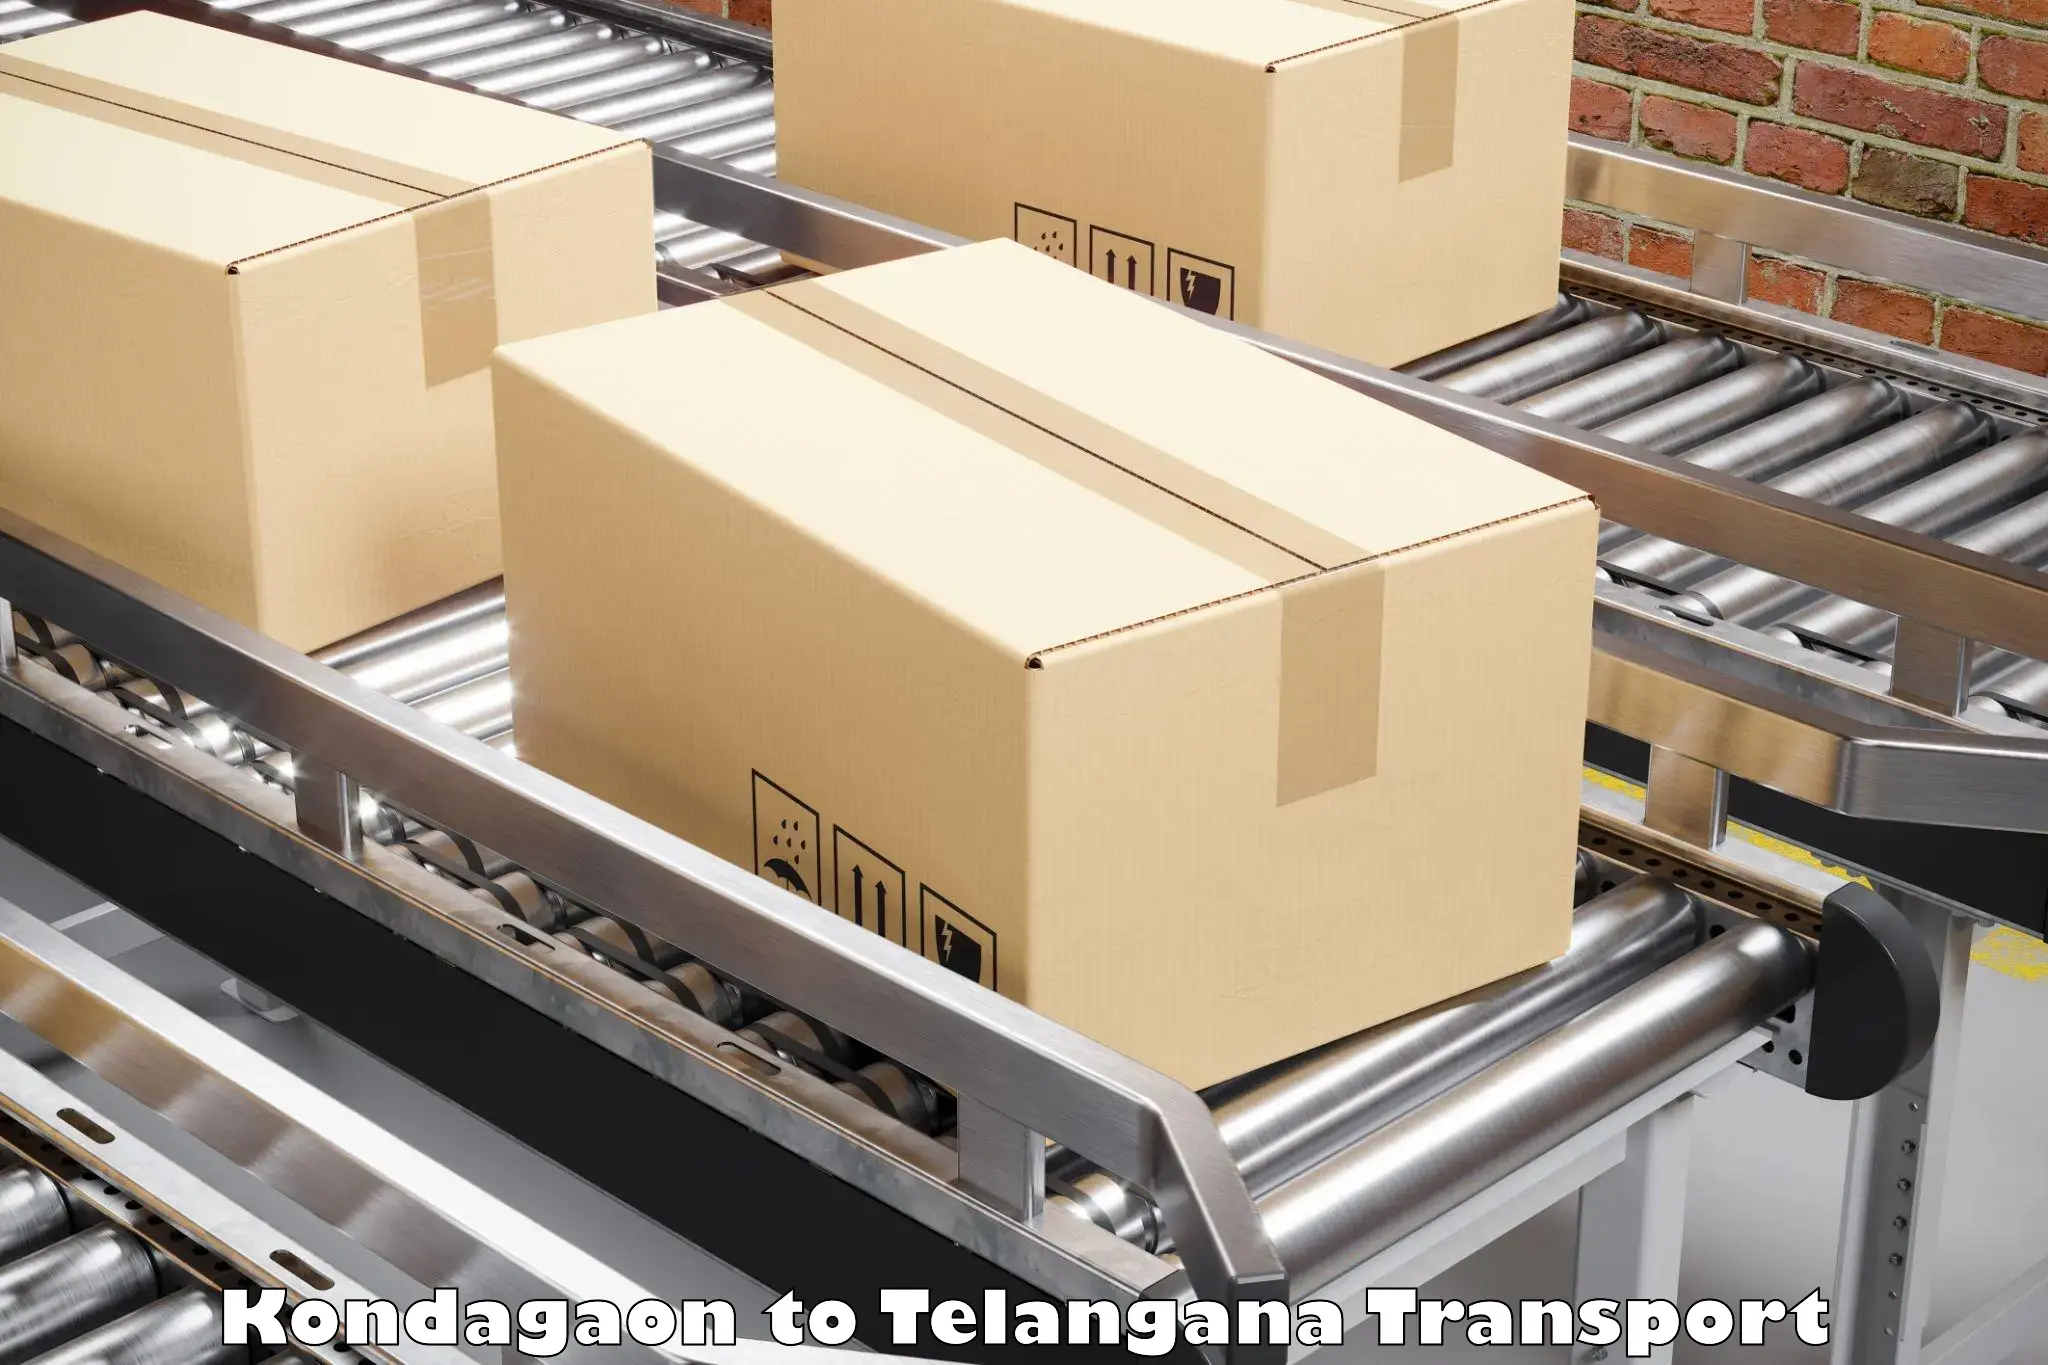 Furniture transport service Kondagaon to Kothagudem